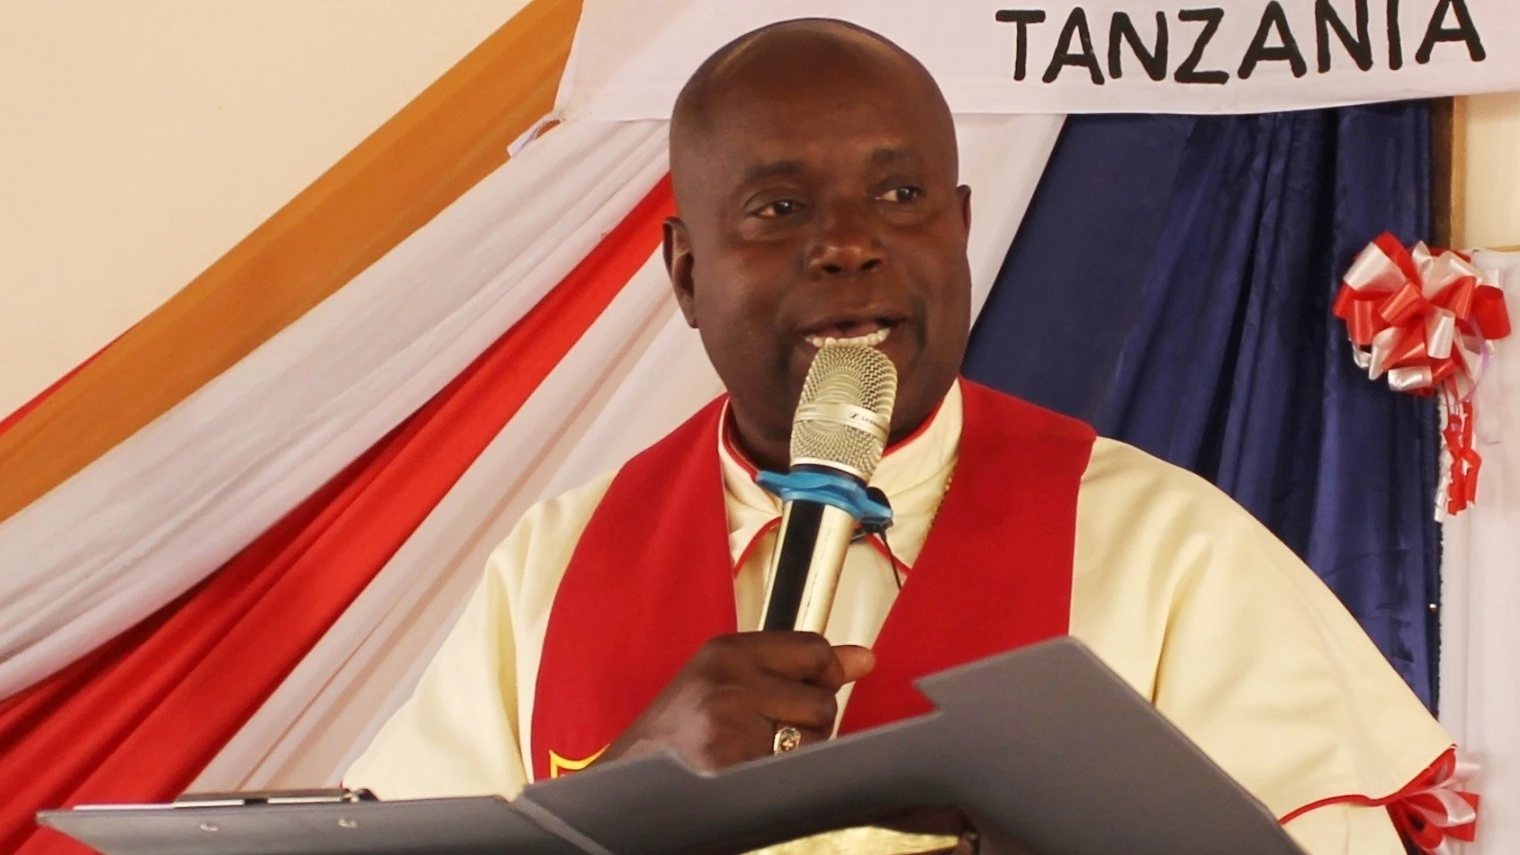 Askofu Mkuu wa Kanisa la Methodist Tanzania, Joseph Bundala.